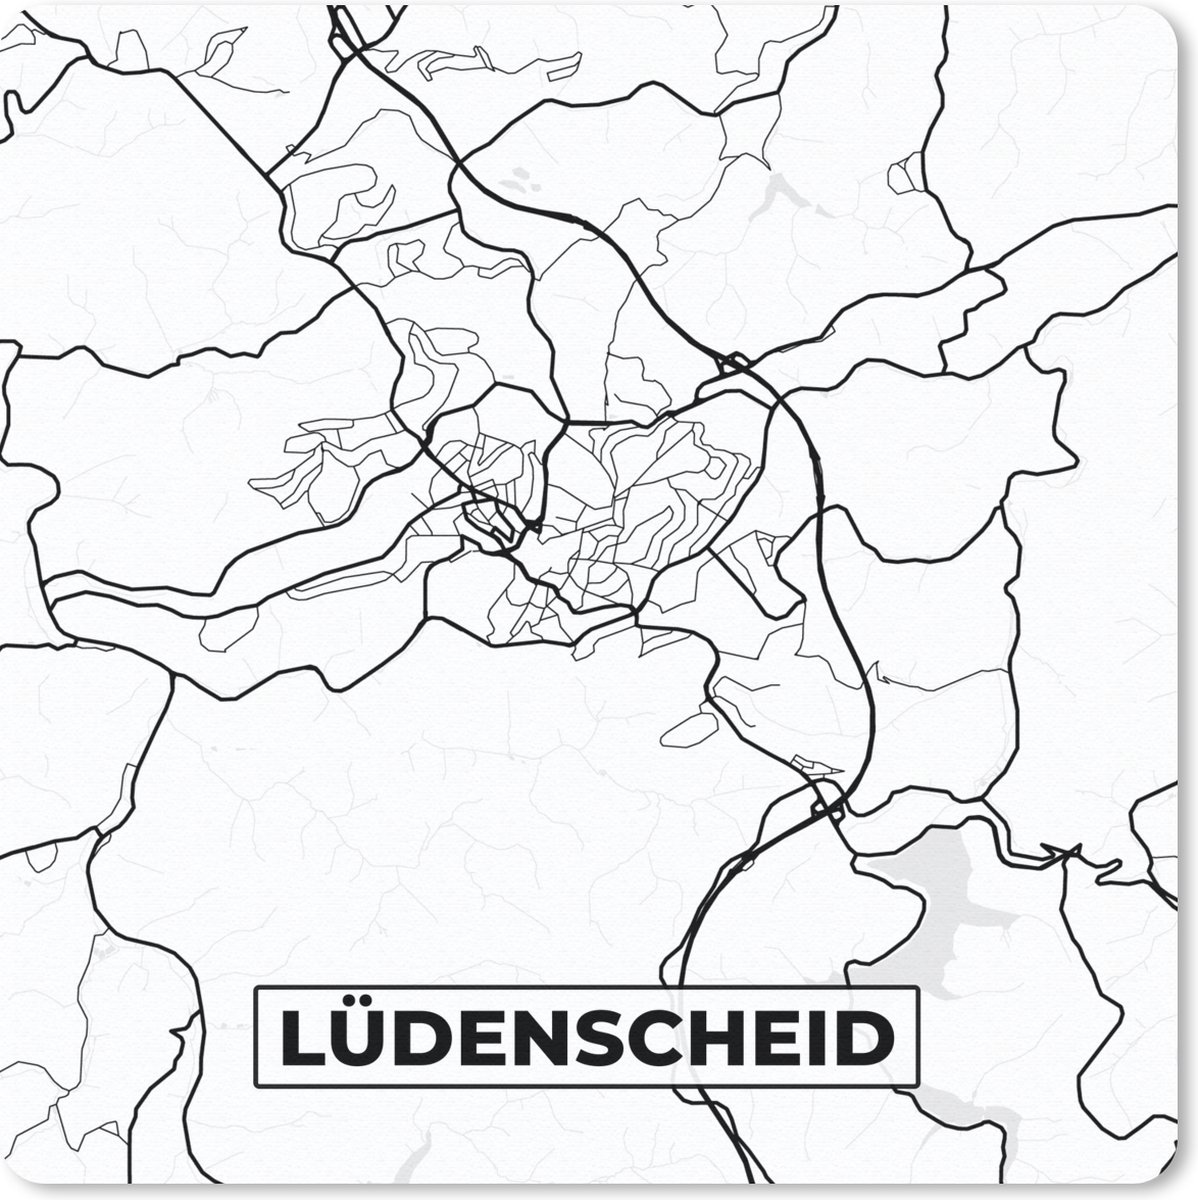 Muismat Klein - Lüdenscheid - Plattegrond - Kaart - Stadskaart - 20x20 cm